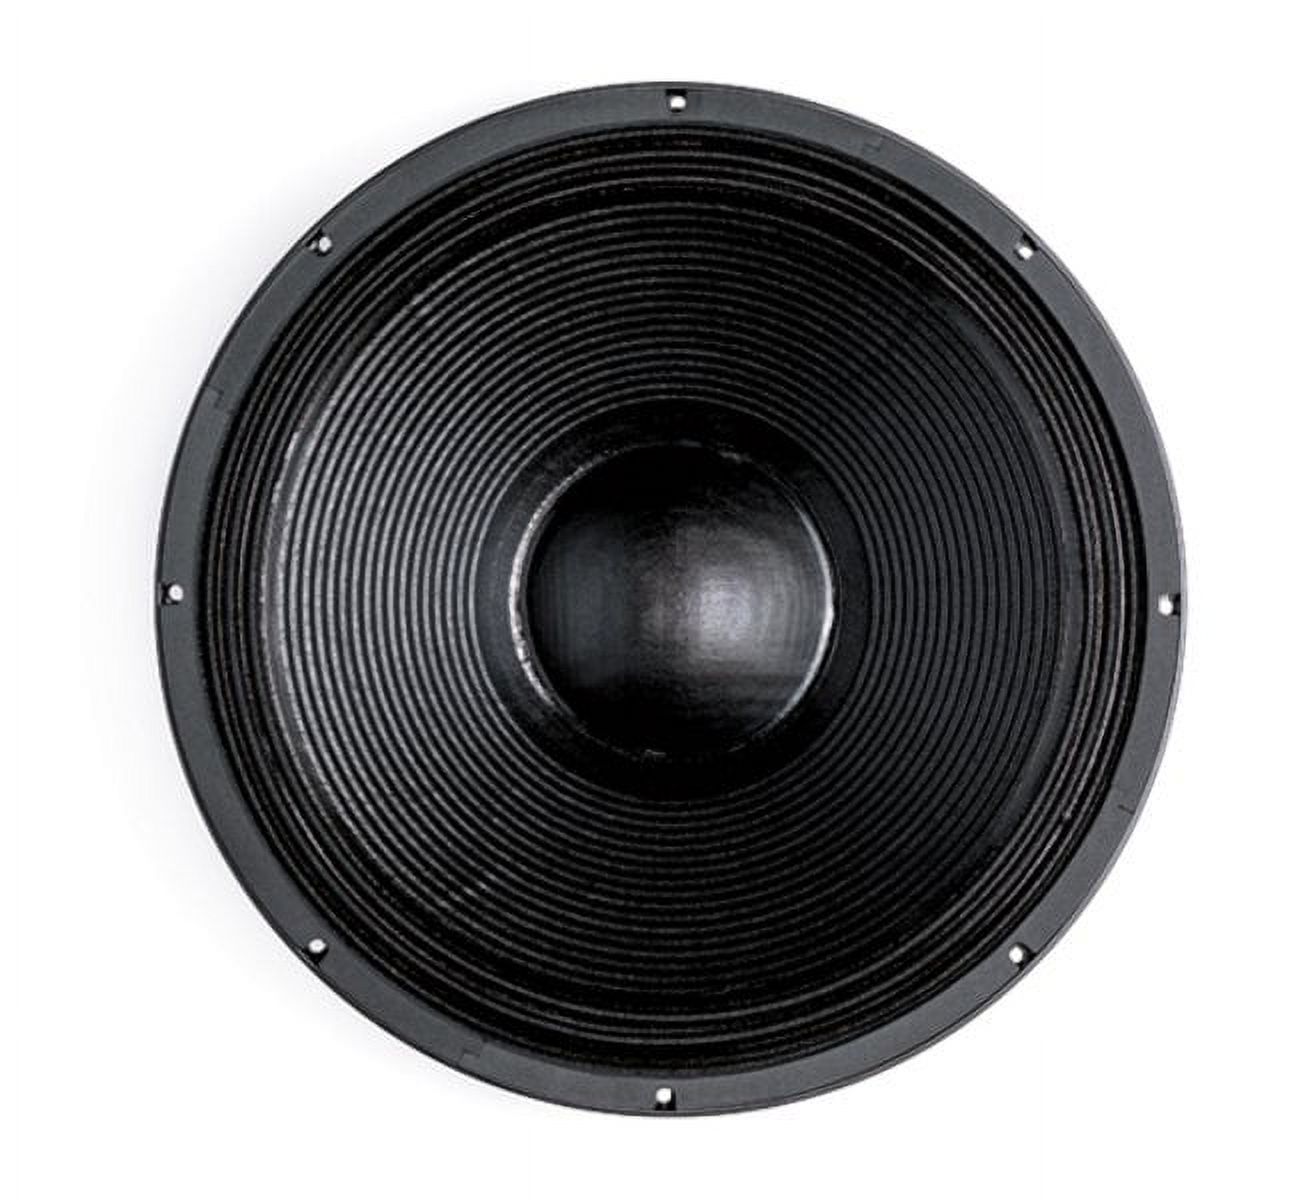 B & C Speakers 21SW115-4 21 in. 3400W 4 Ohm Professional Neodymium Subwoofer - image 2 of 2